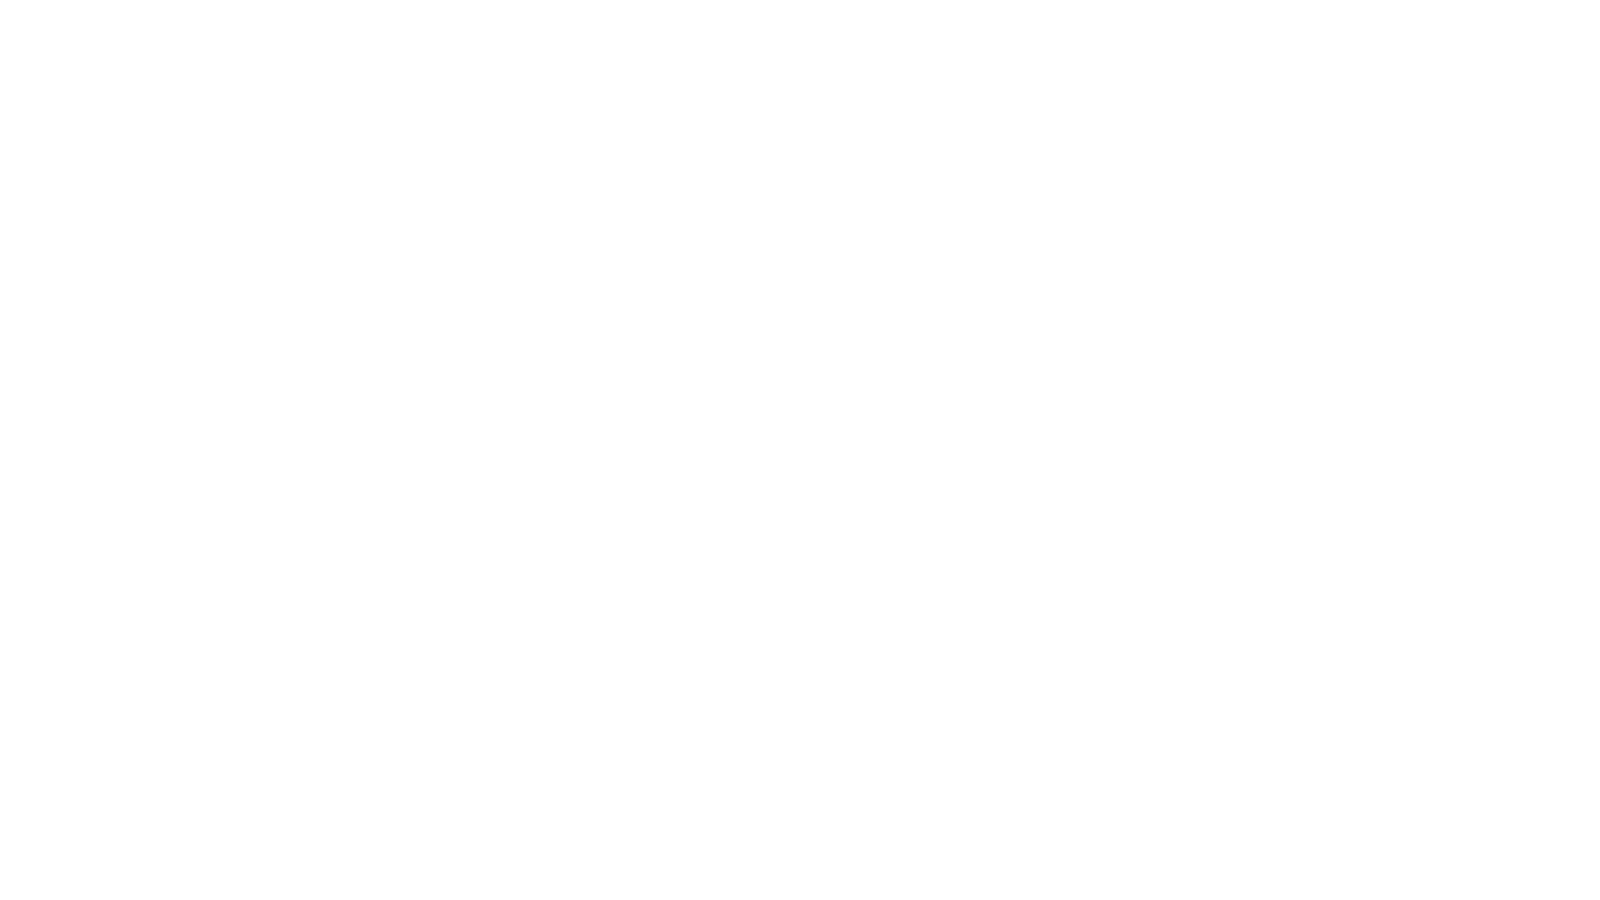 (c) Rockhall.com